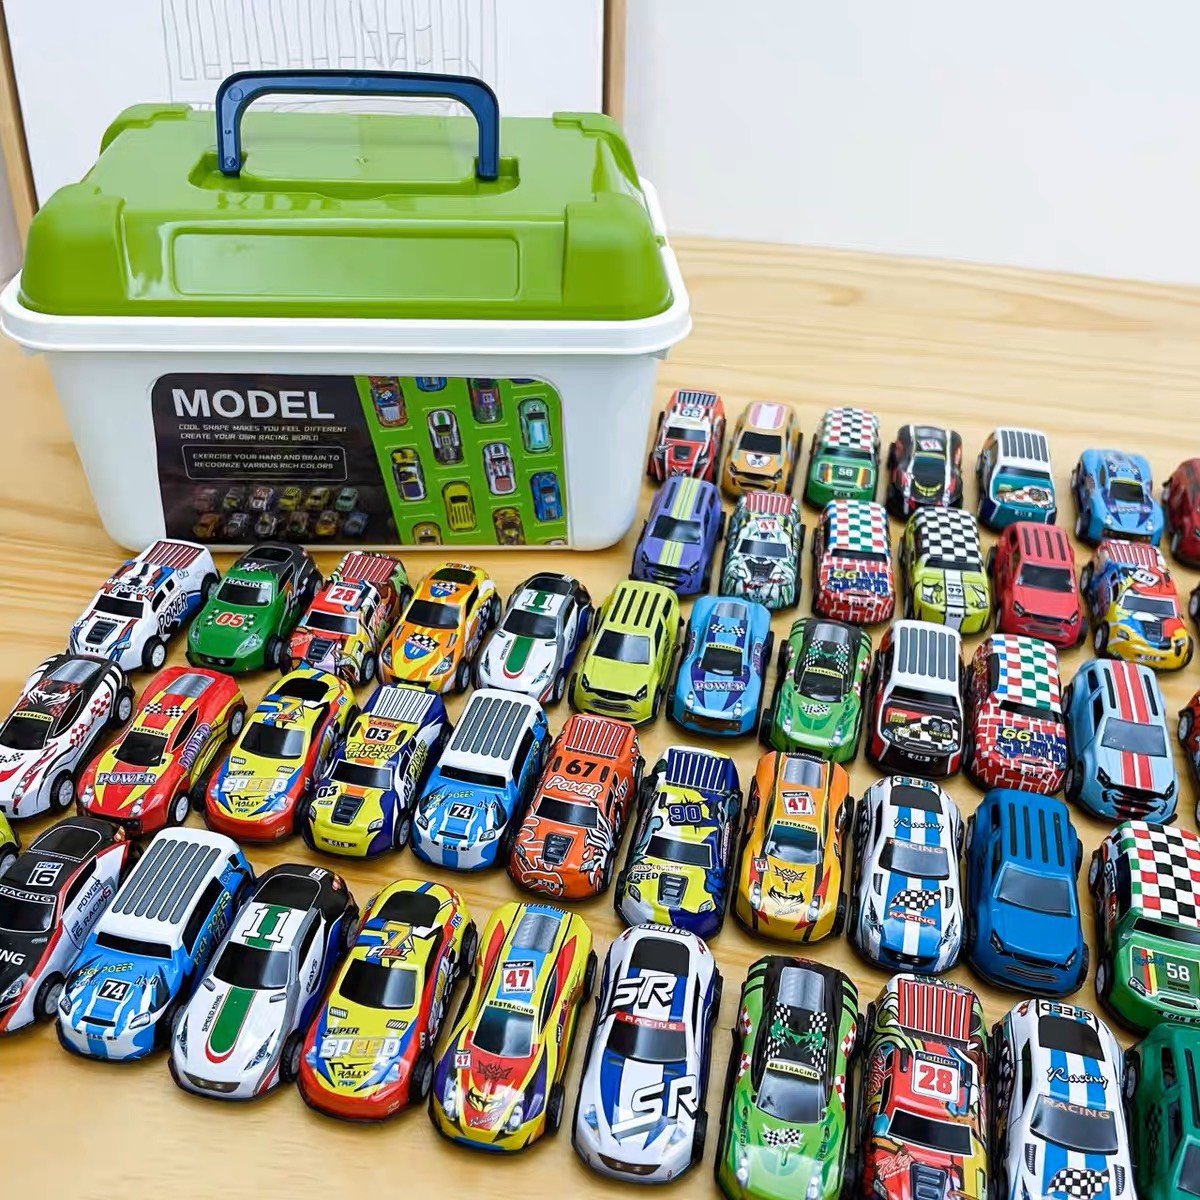 Bộ sưu tầm mô hình trang trí 30 chiếc ô tô mini phong cách thể thao cực chất cho bé trai và bé gái - Hộp 30 ô tô mạ sắt siêu bền chạy cót thế hệ mới kèm hộp đựng cất gọn